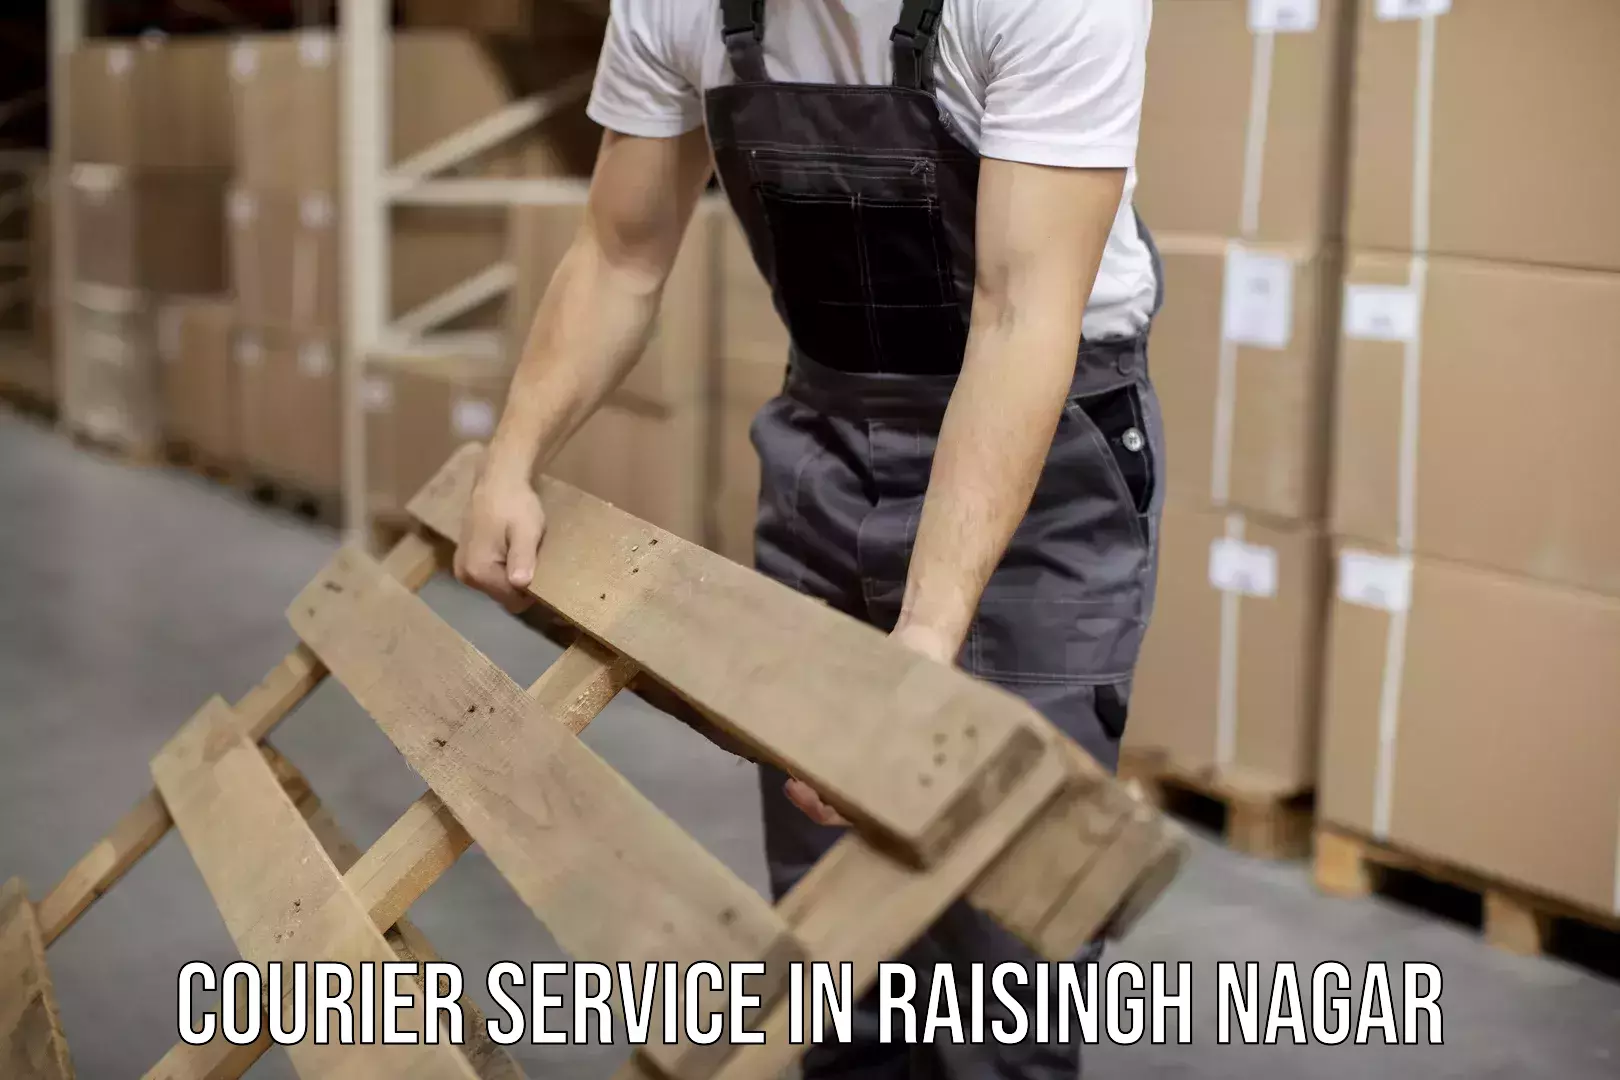 Efficient parcel delivery in Raisingh Nagar